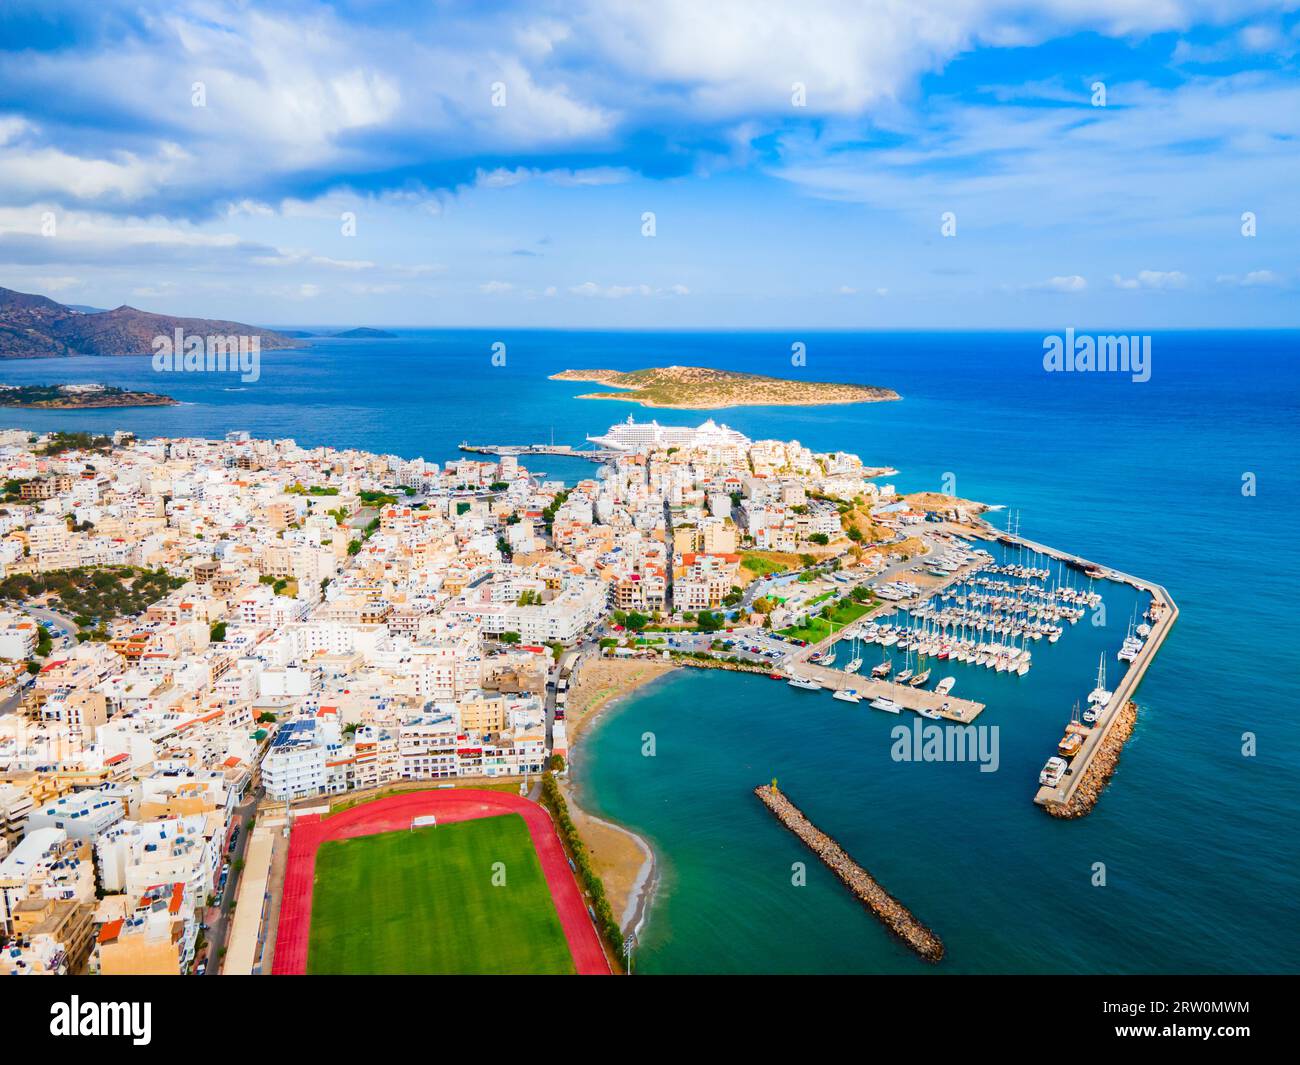 Vista panoramica aerea del porto di Agios Nikolaos. Agios, Hagios o Aghios Nikolaos è una città costiera sull'isola di Creta in Grecia. Foto Stock